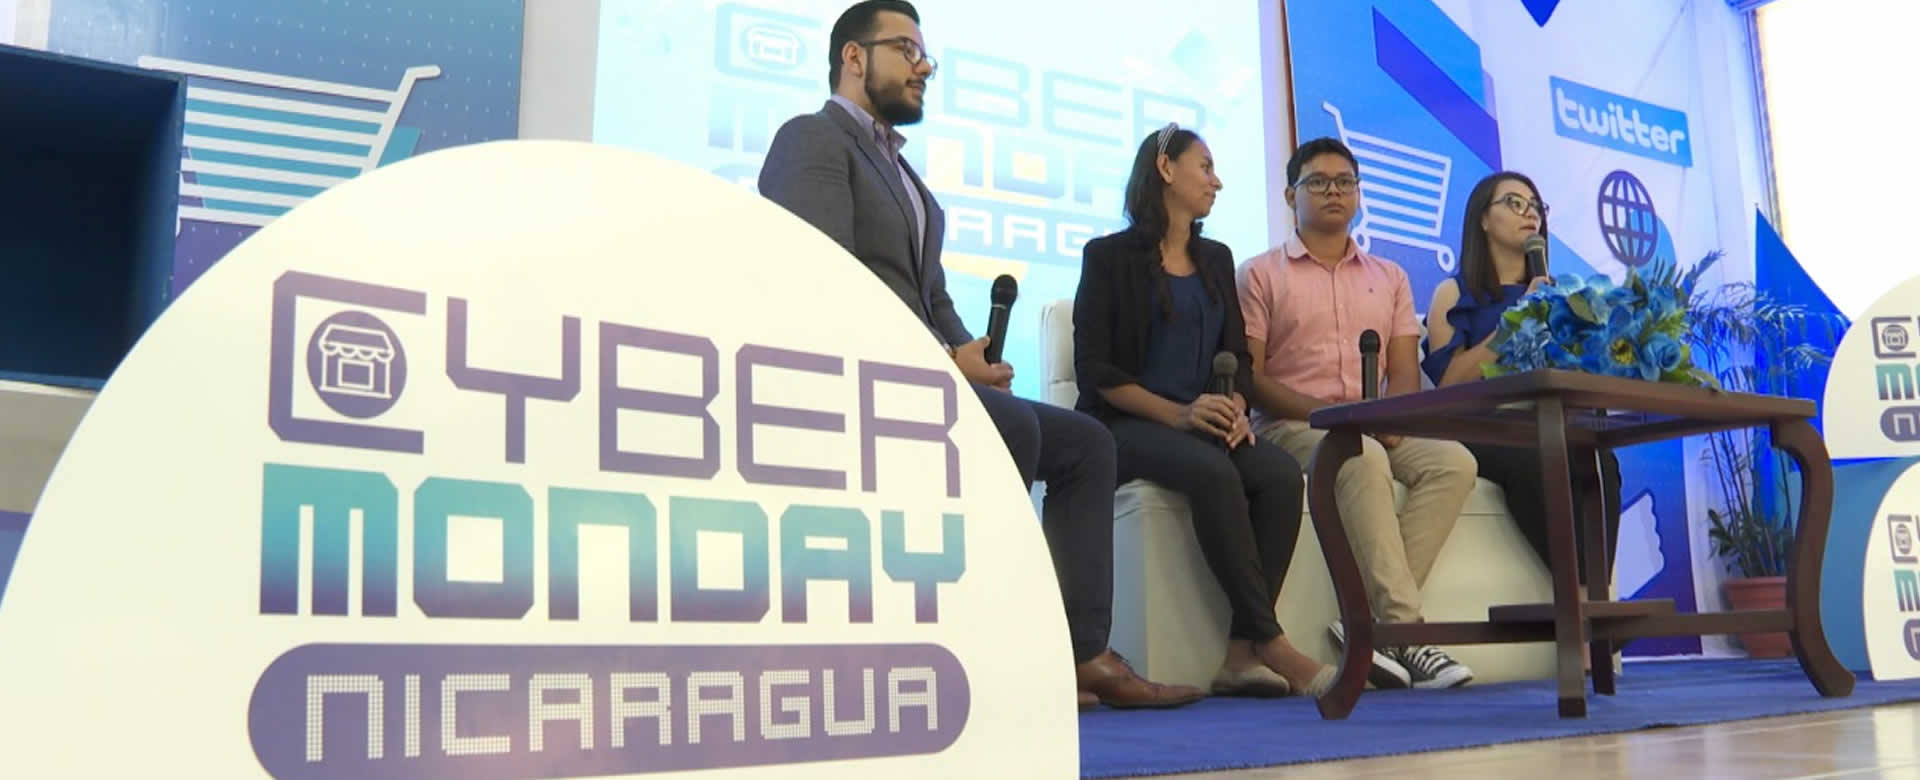 Descubre en qué consiste el Cyber Monday Nicaragua 2019